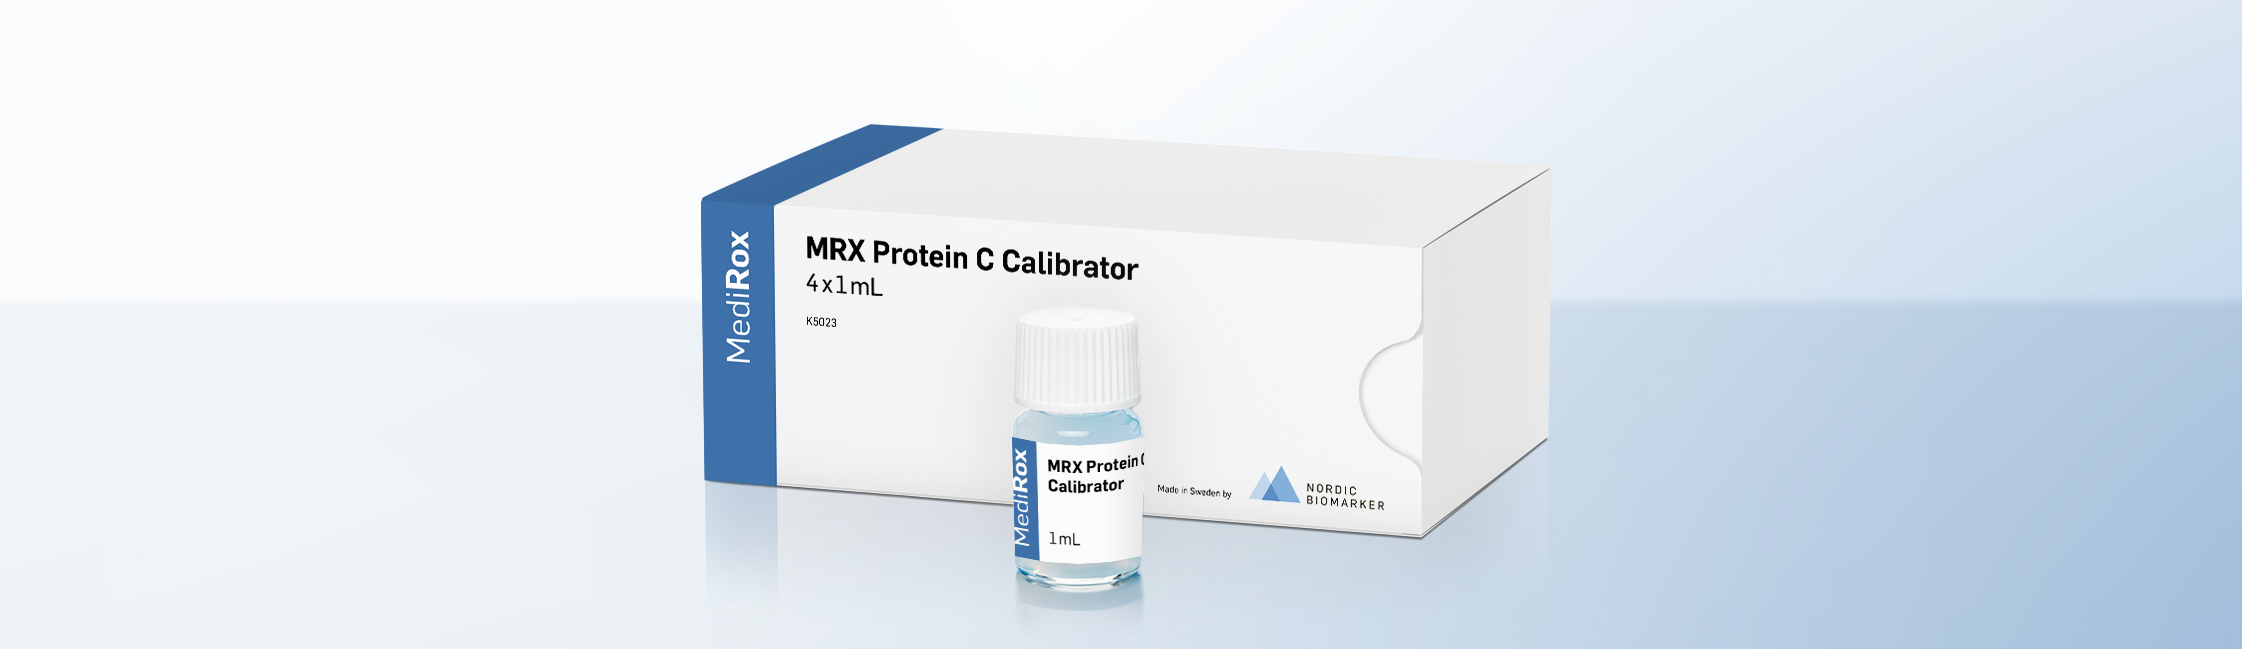 MRX Protein C Calibrator